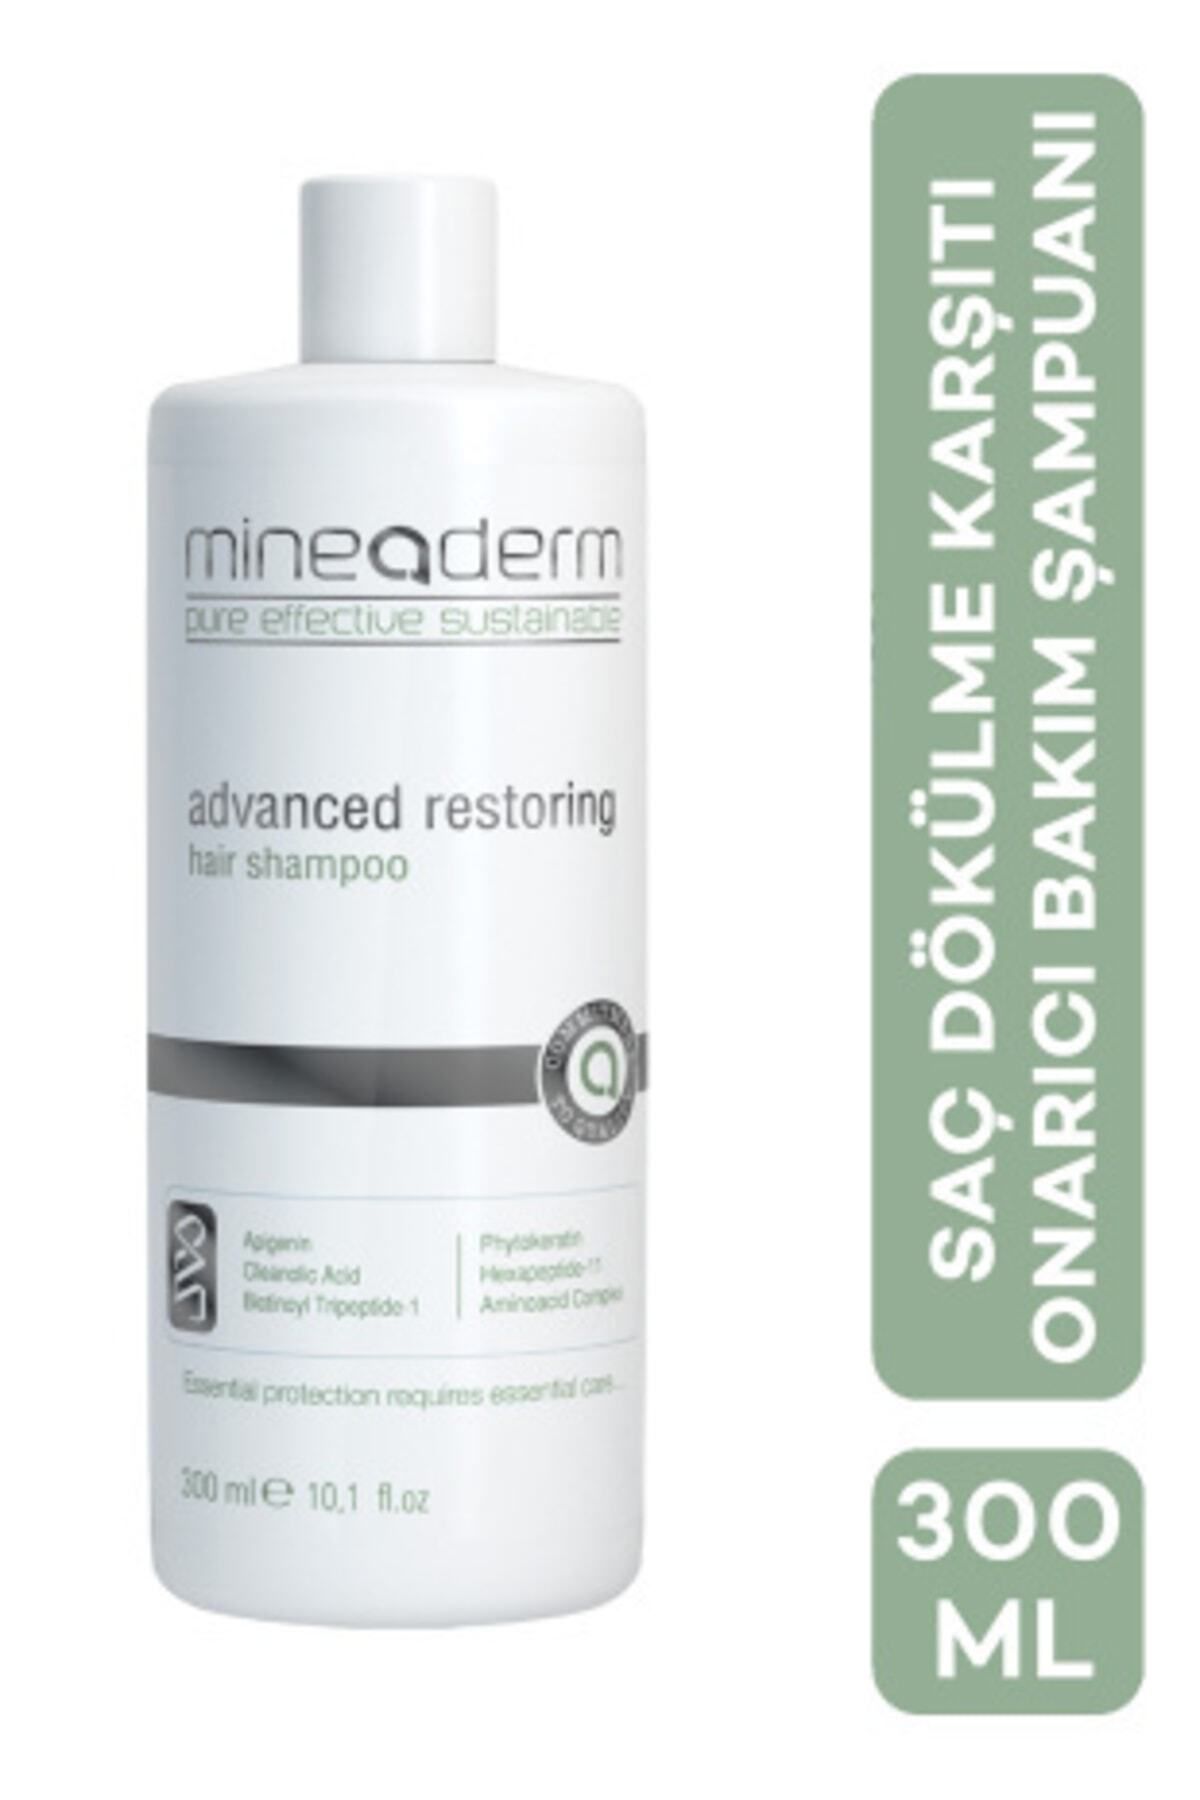 mineaderm Saç Dökülme Karşıtı Onarıcı Bakım Şampuanı Advanced Restoring Shampoo